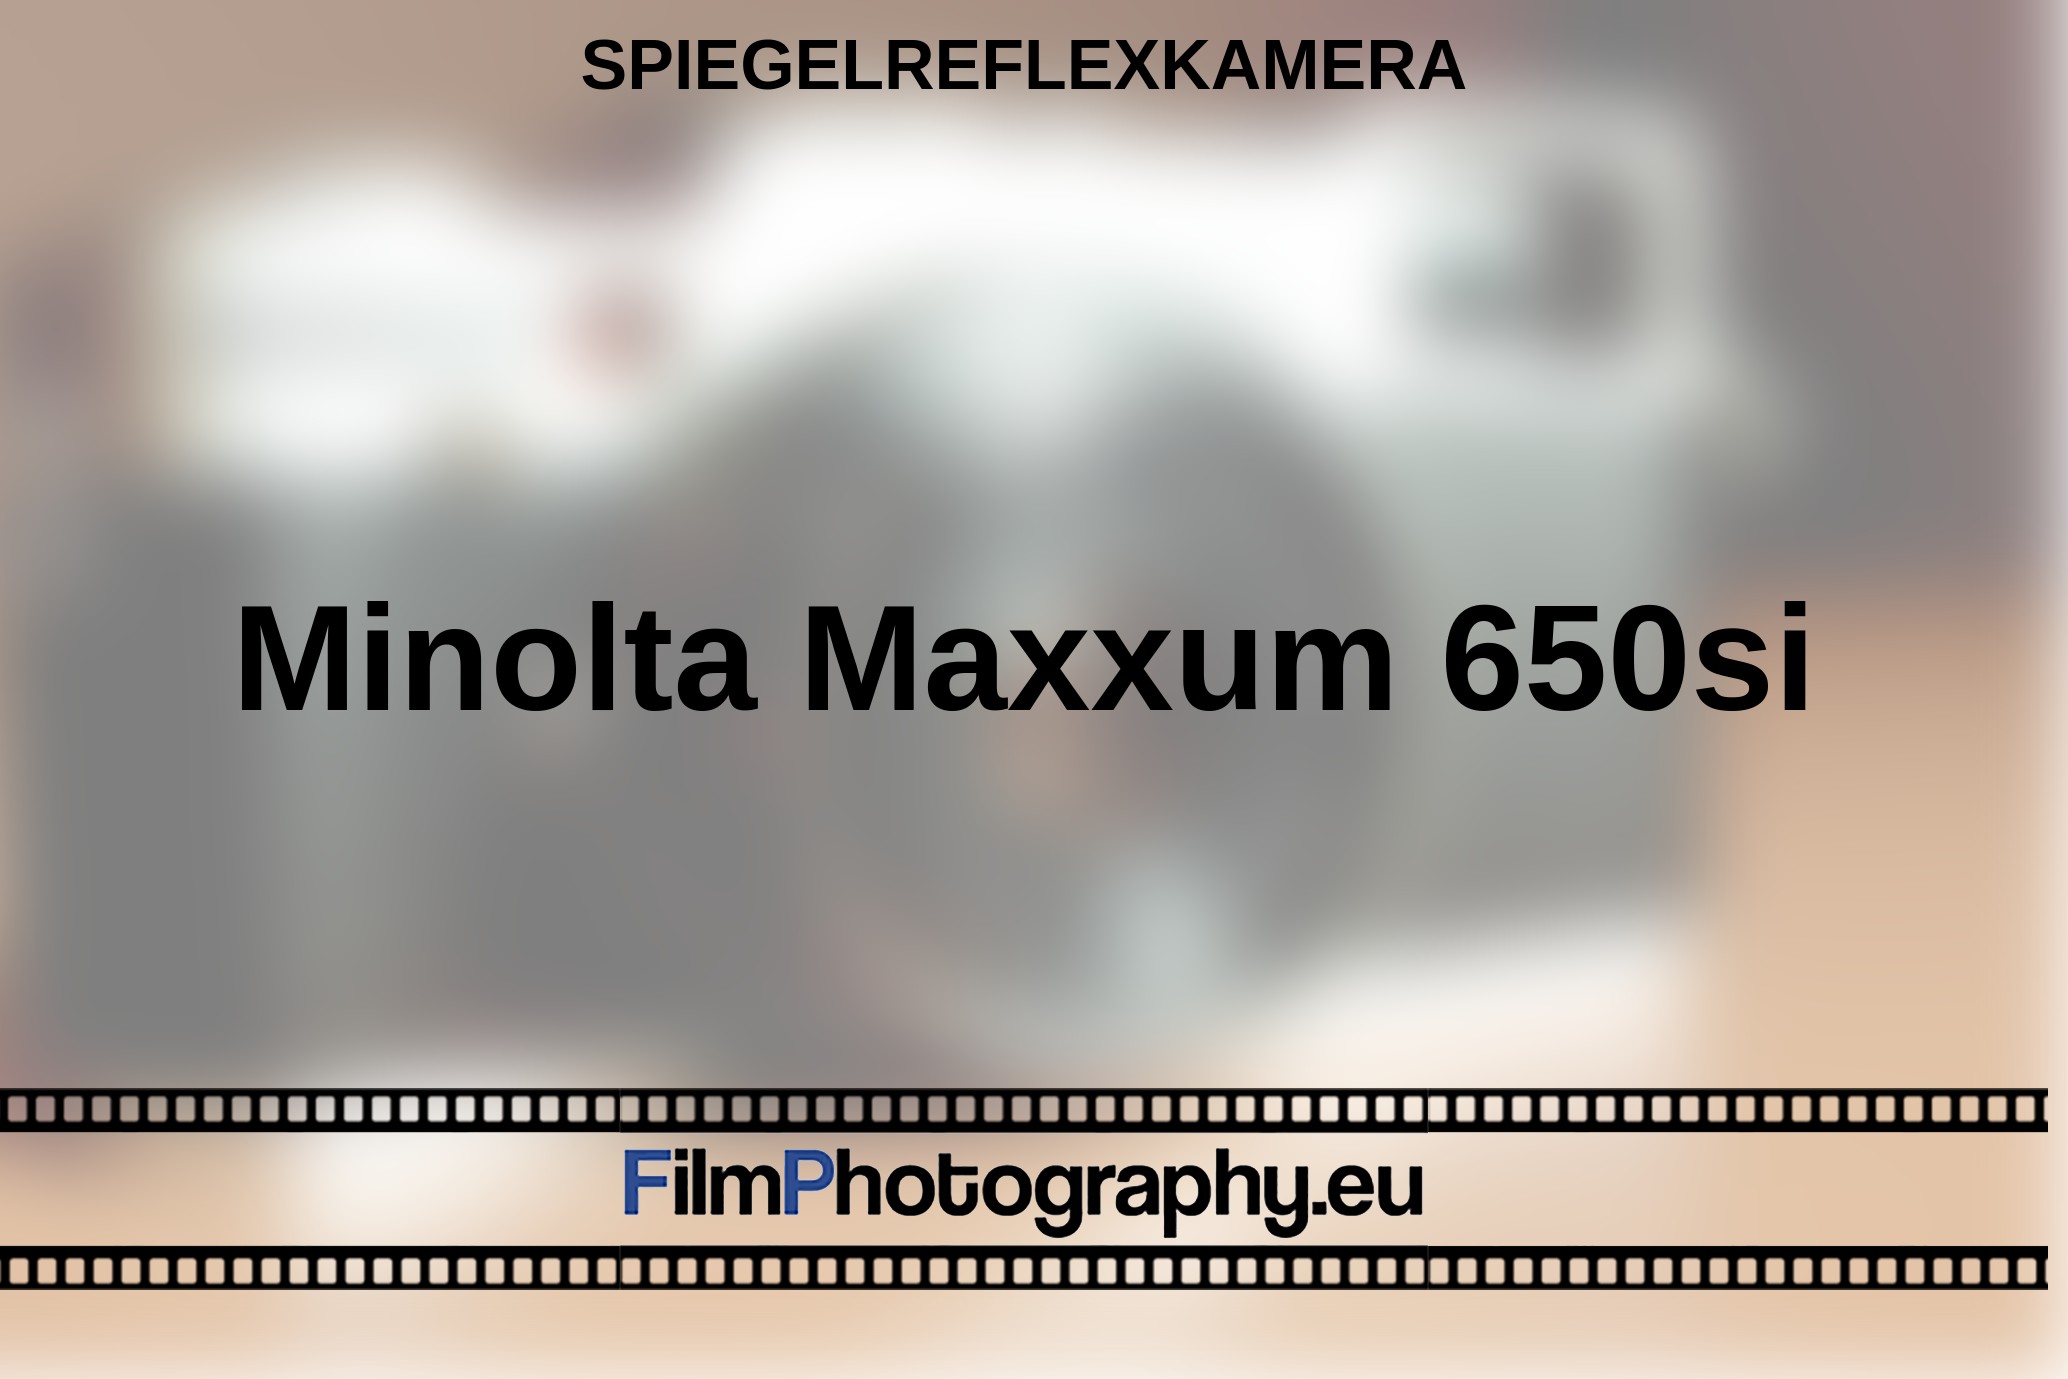 Minolta-Maxxum-650si-Spiegelreflexkamera-bnv.jpg